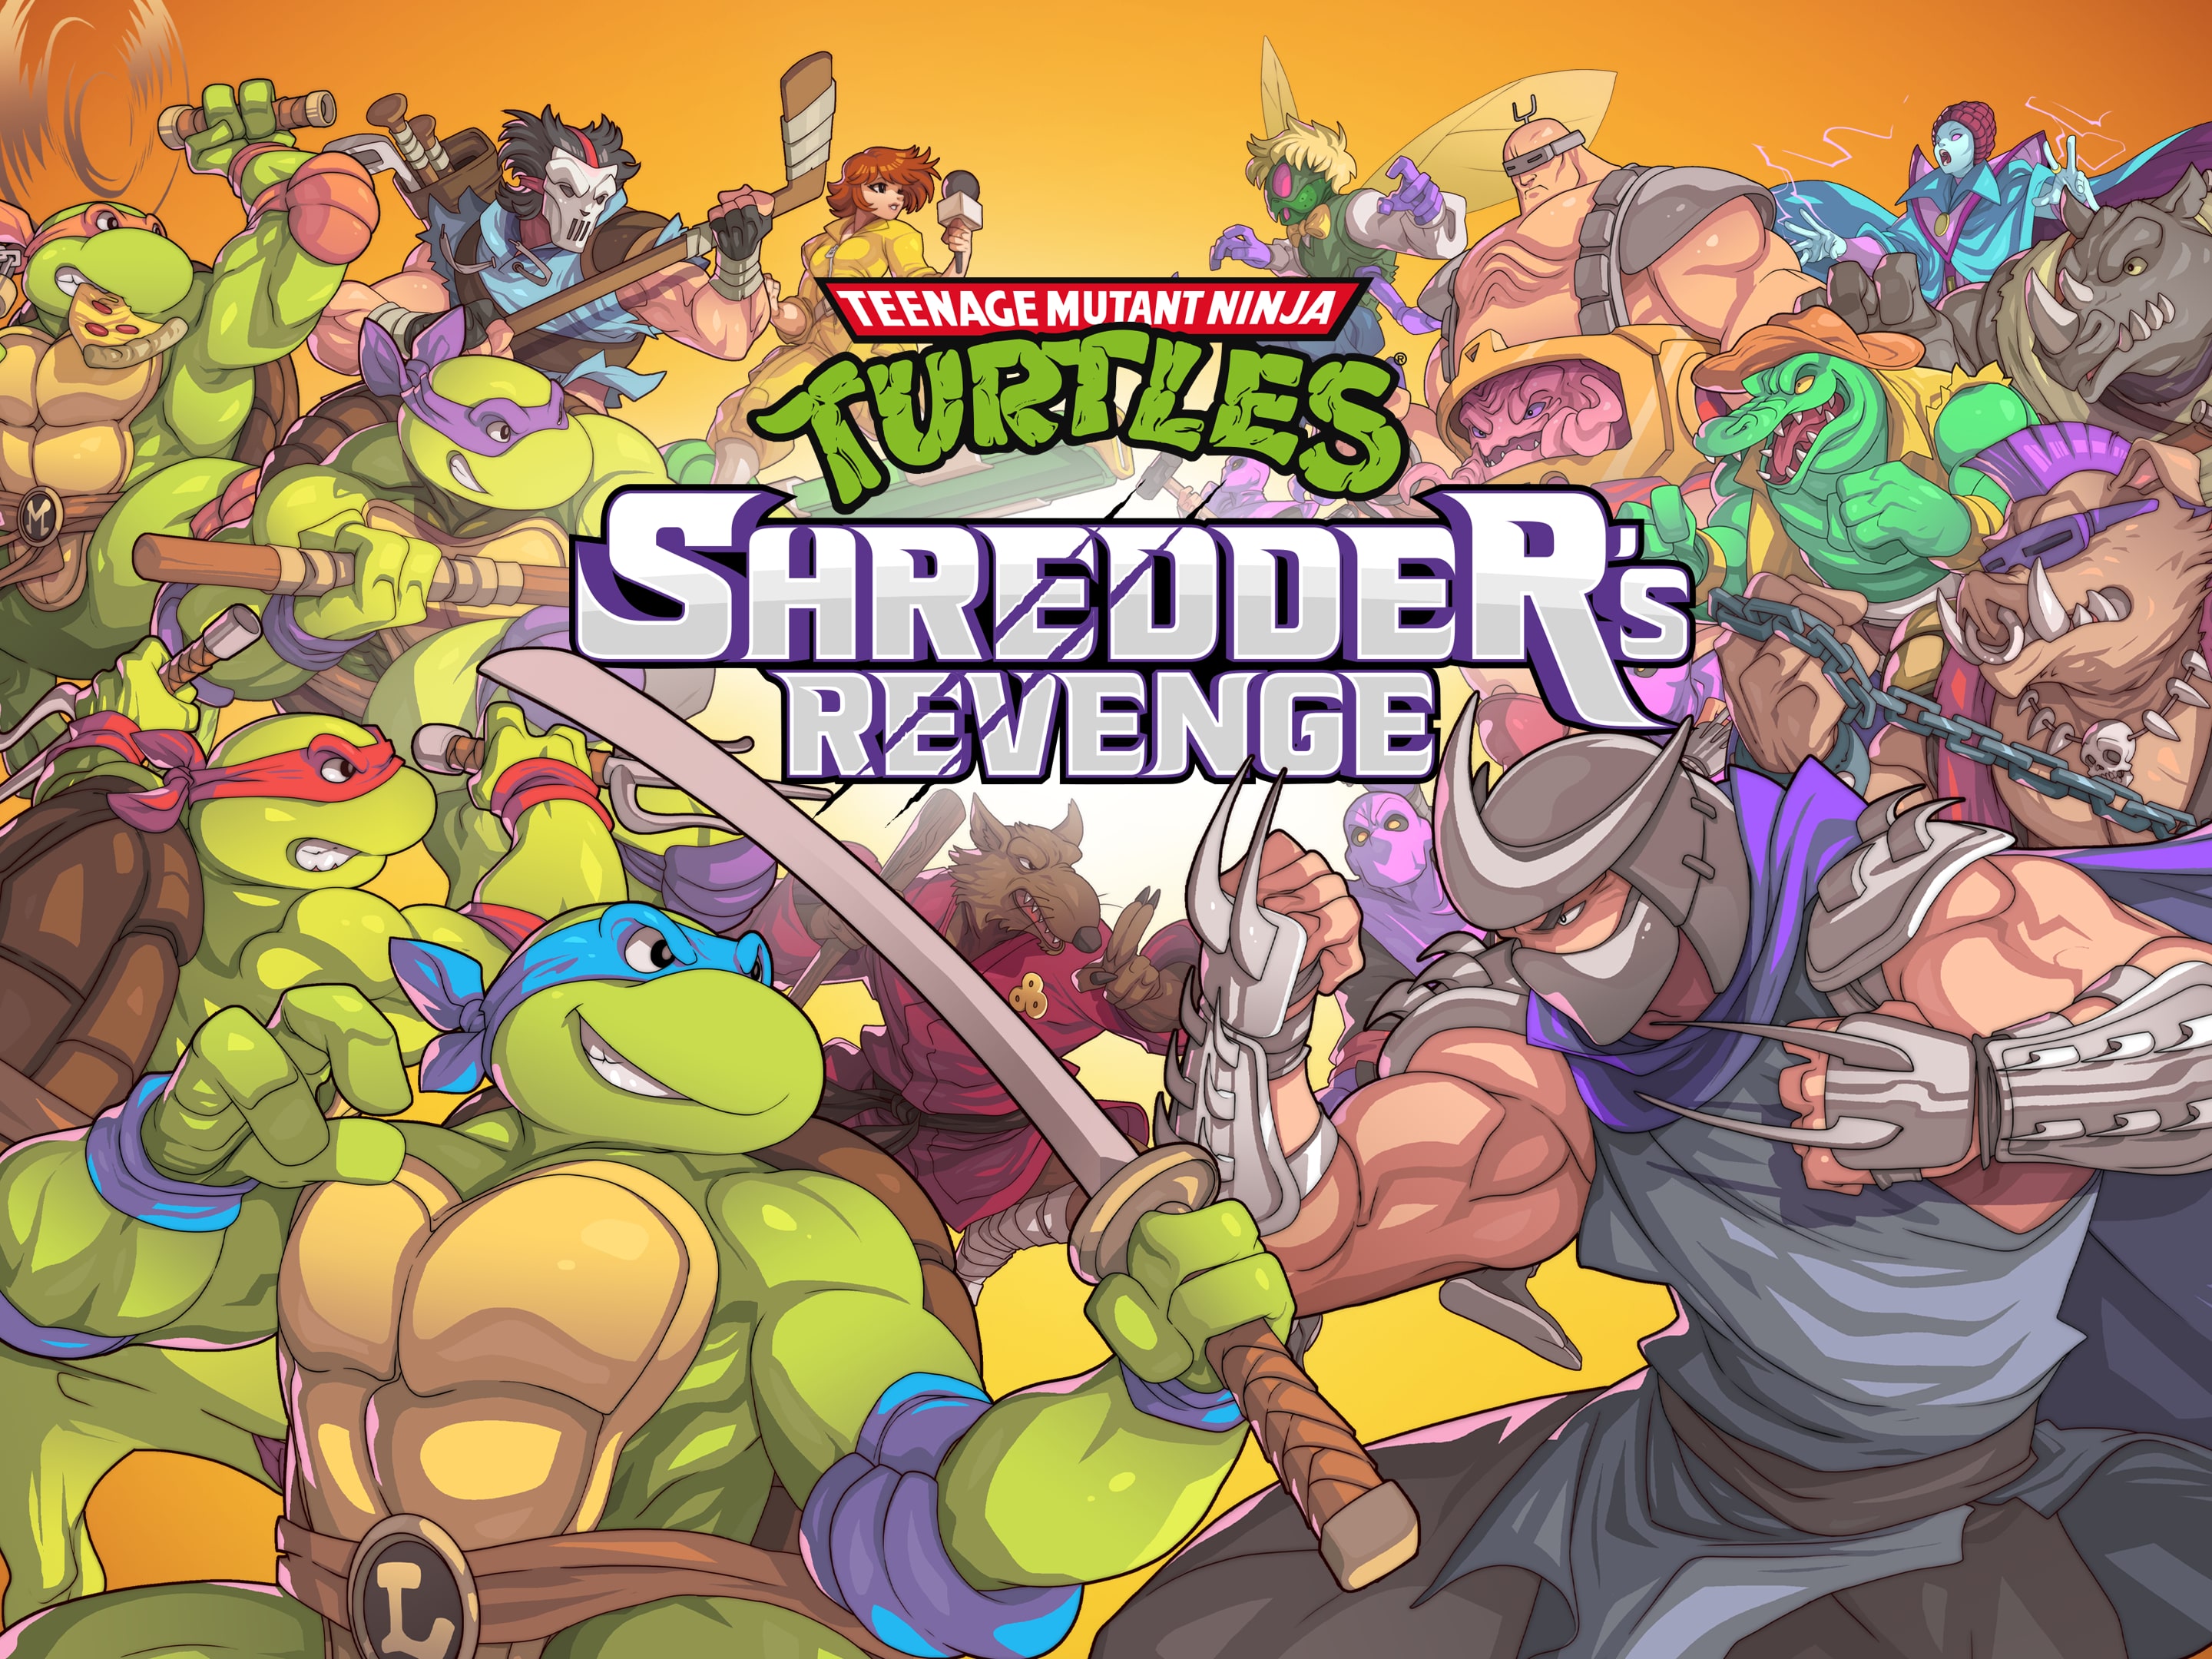 Teenage Mutant Ninja Turtles: Shredder's Revenge + Dimension 